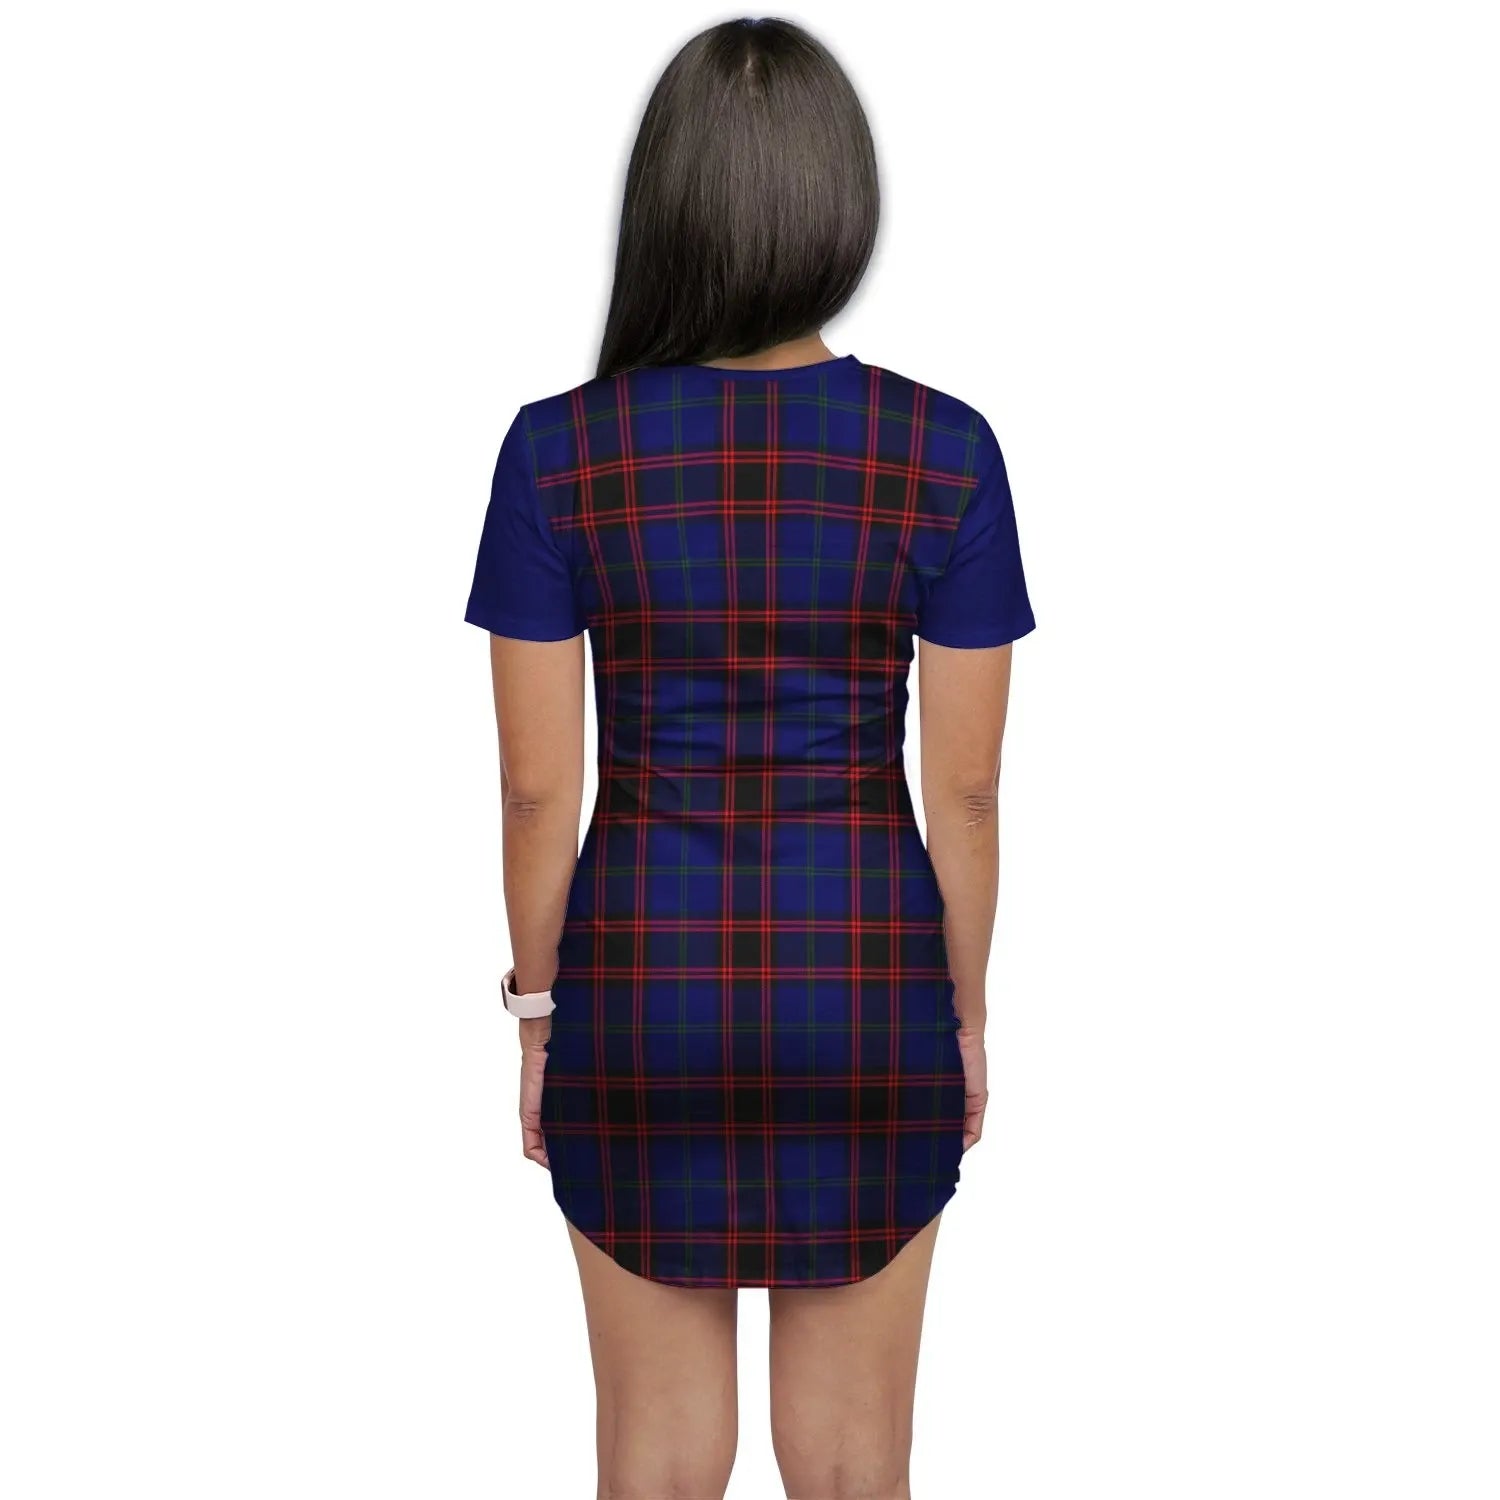 Wedderburn Tartan Crest T-Shirt Dress